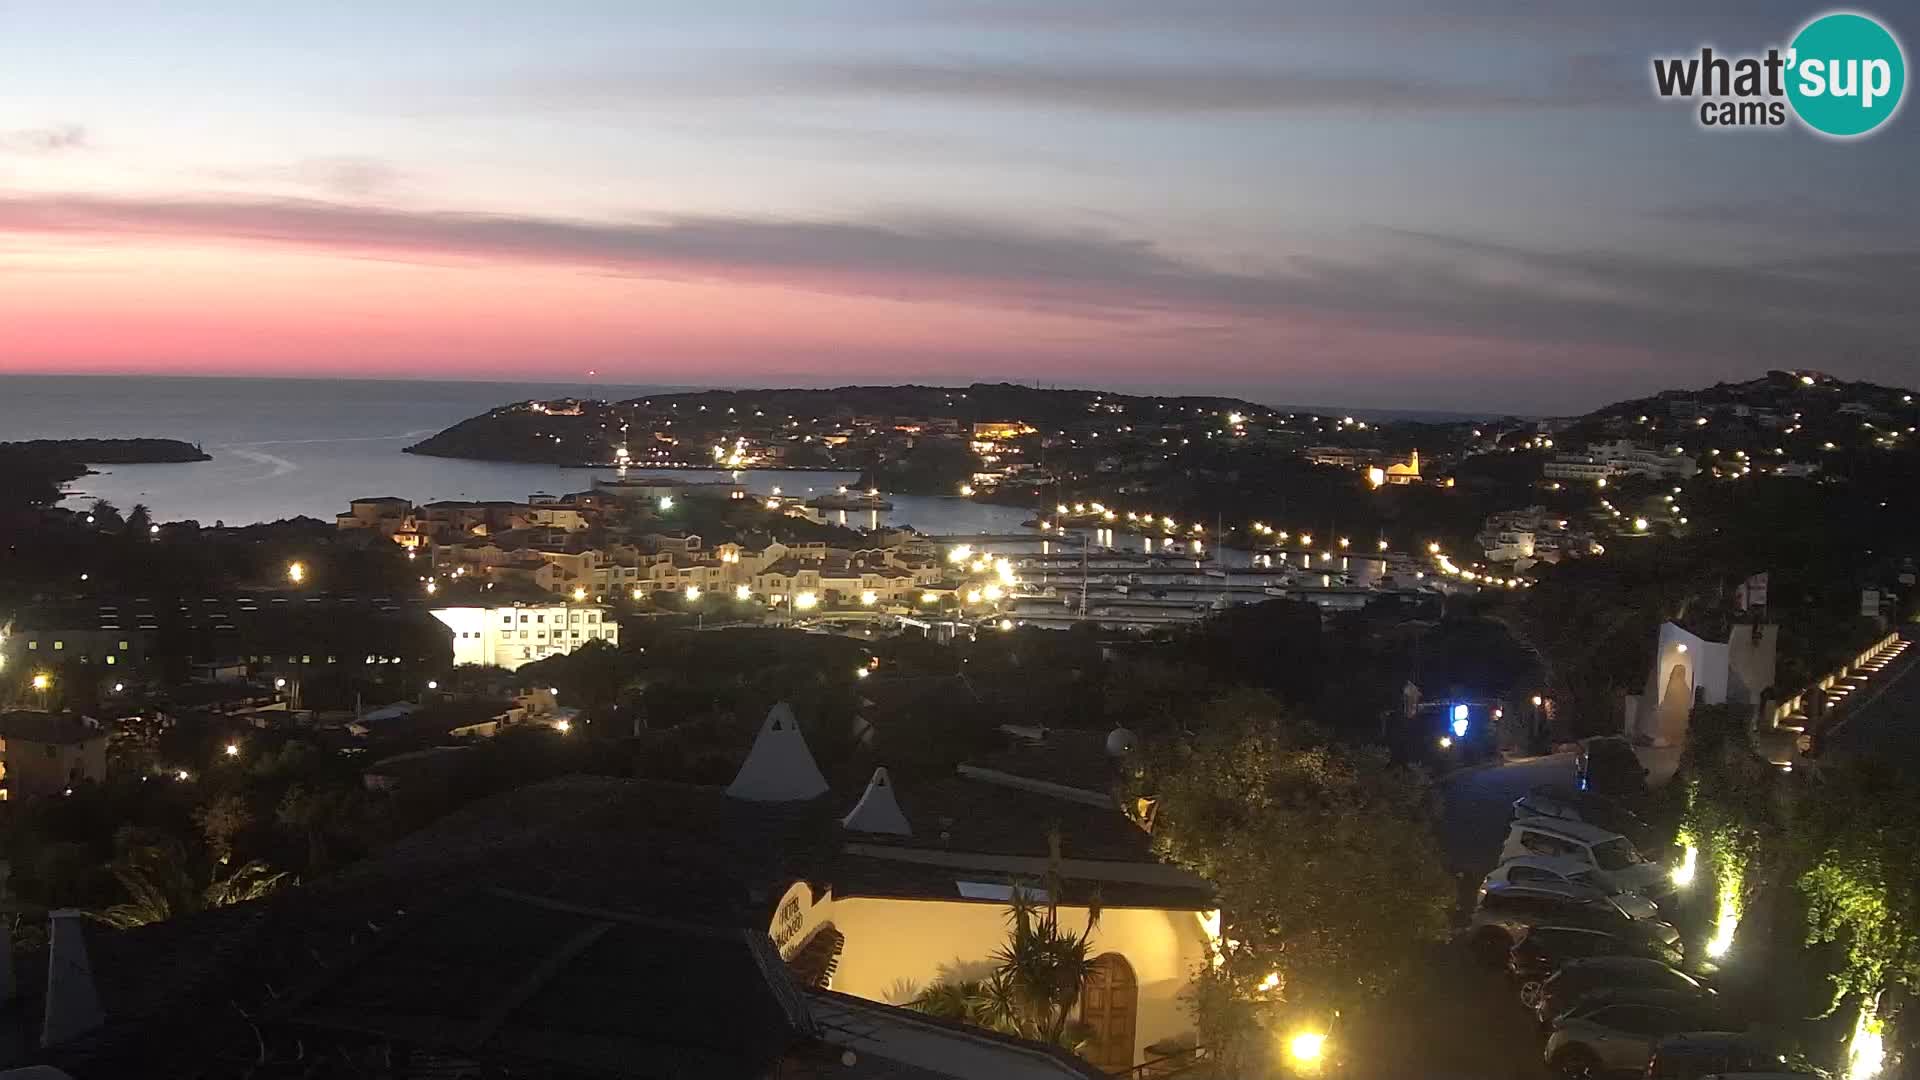 Porto Cervo Man. 05:32